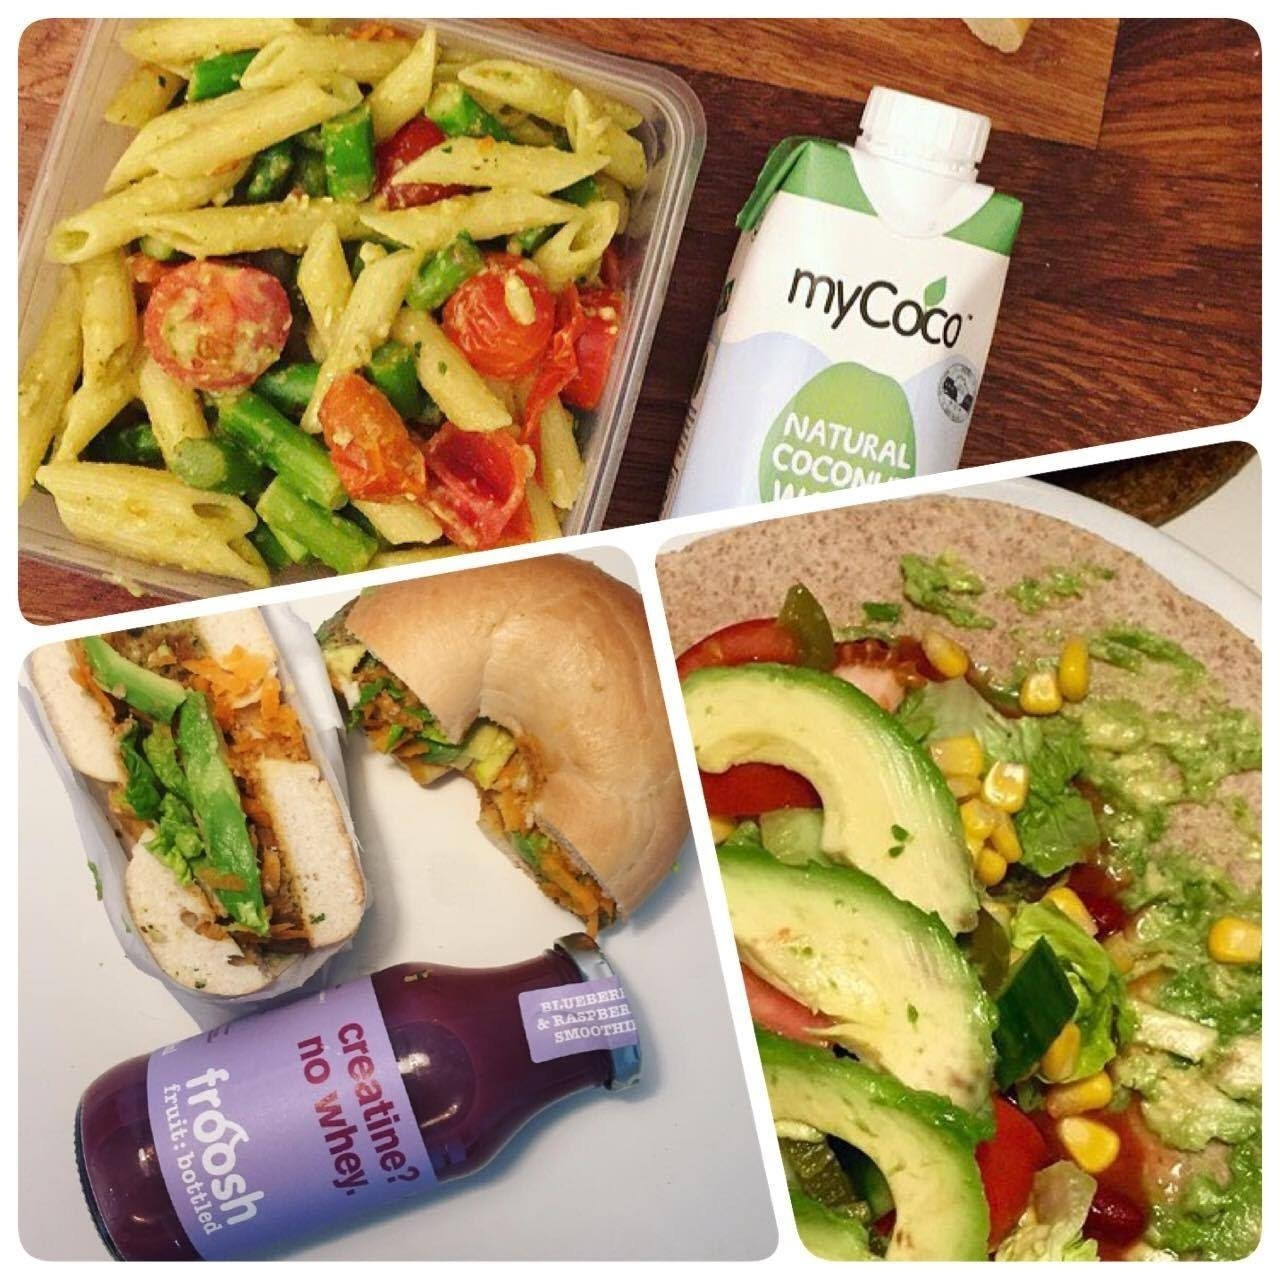 Easy Vegan Lunches For Work
 10 Lovely Vegan Lunch Ideas For Work 2020